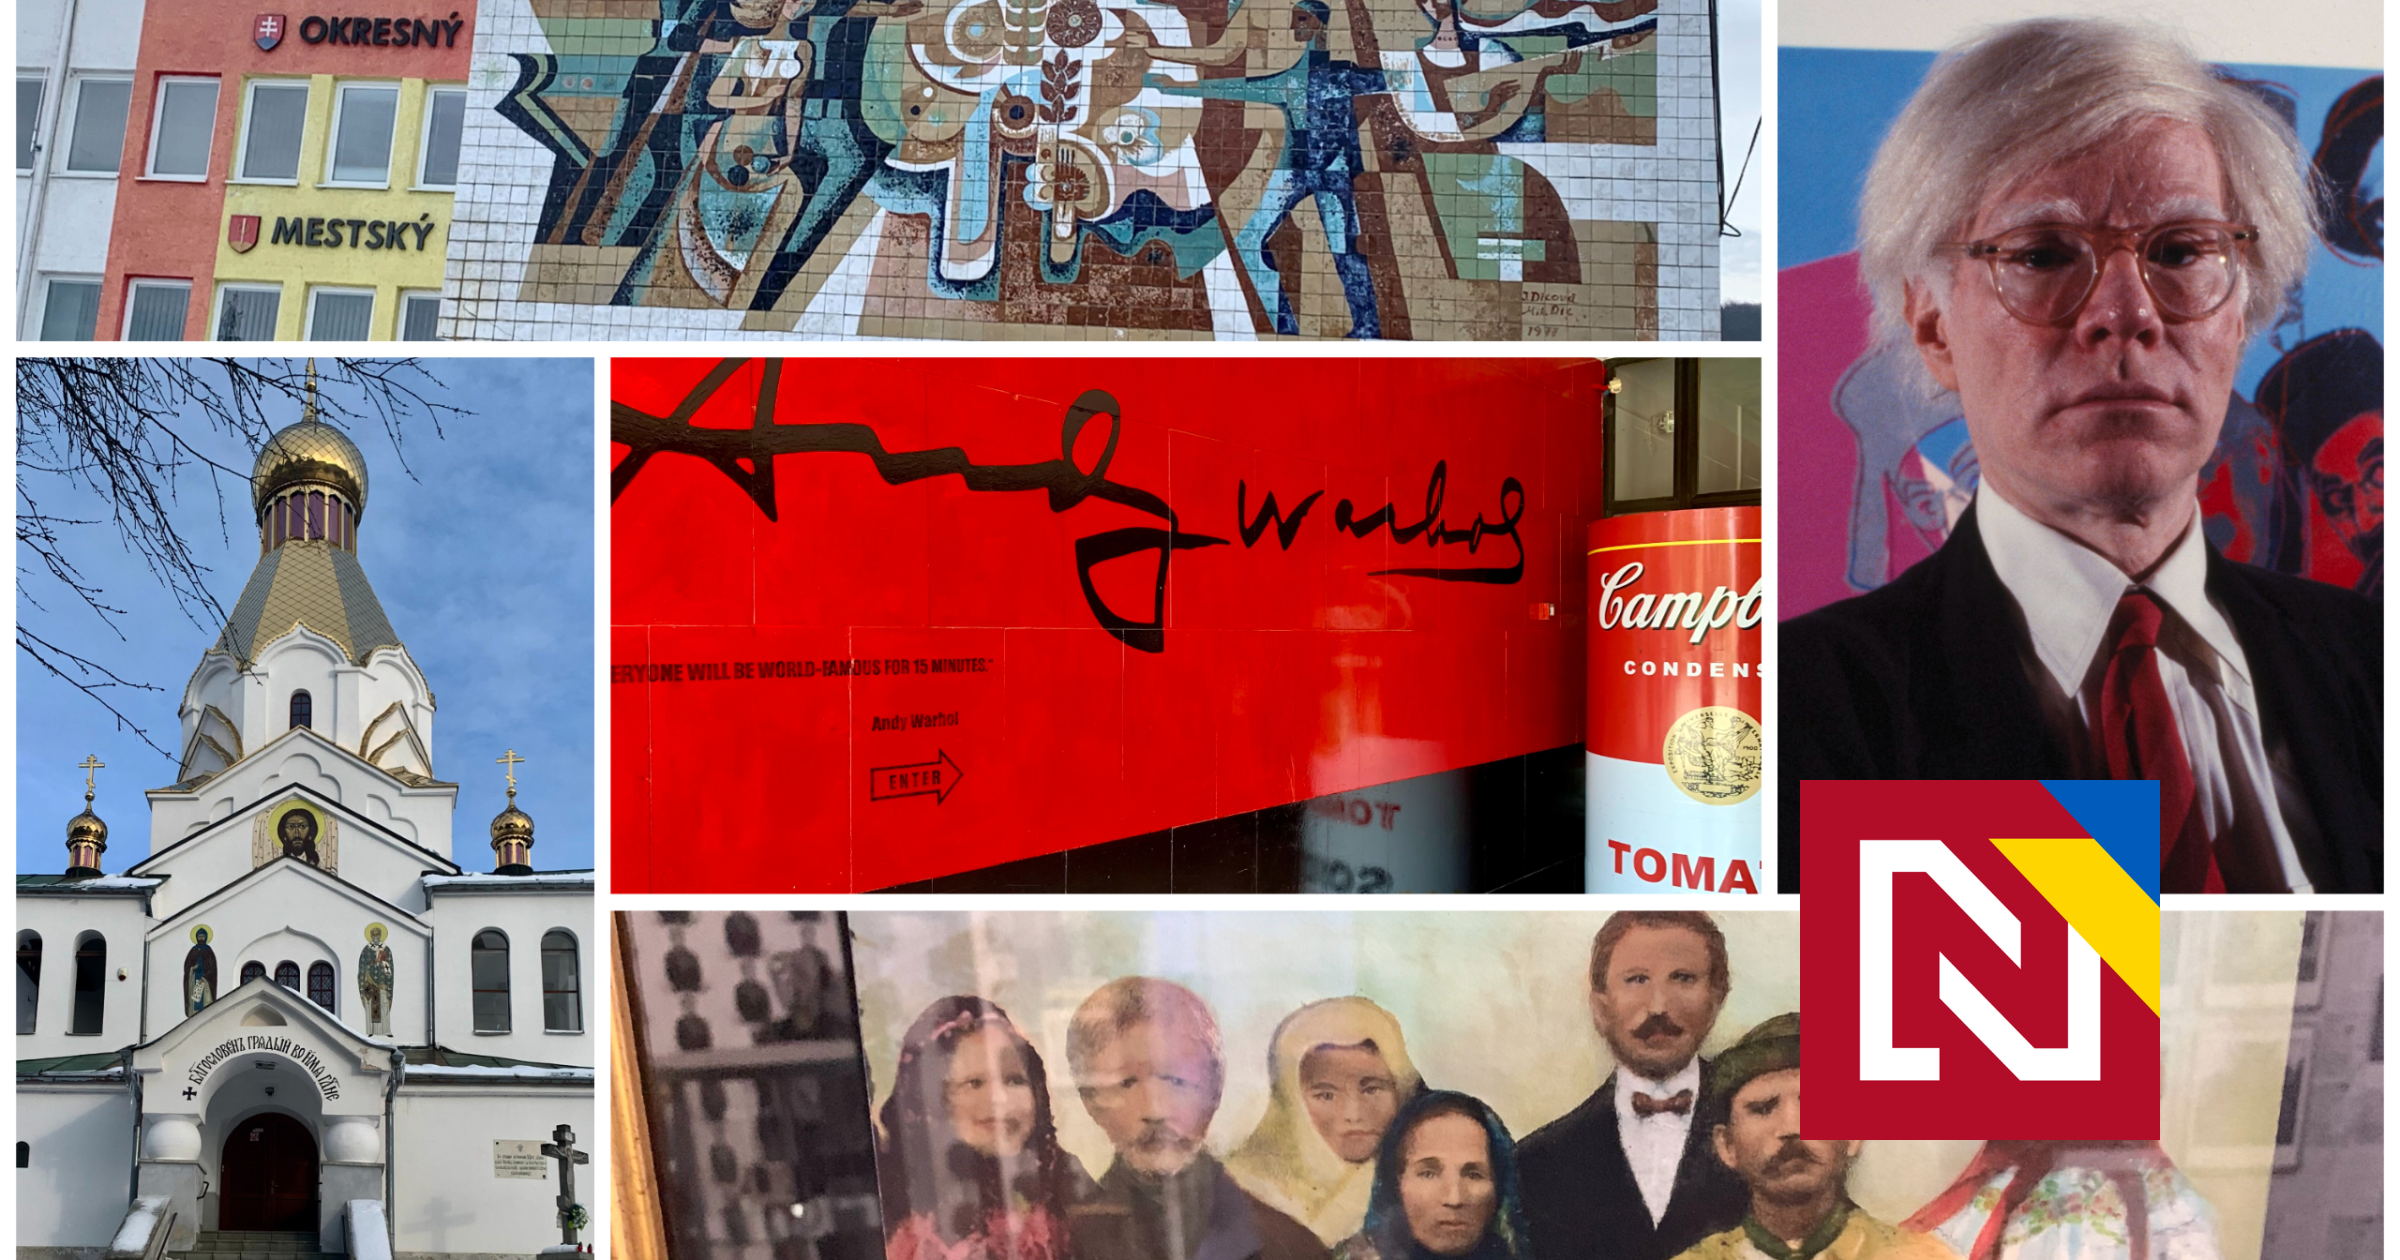 Posledný zhasne: „Amerikán“ Warhol z rodiny emigrantov preslávil Medzilaborce, tie sa dnes vyľudňujú (reportáž)